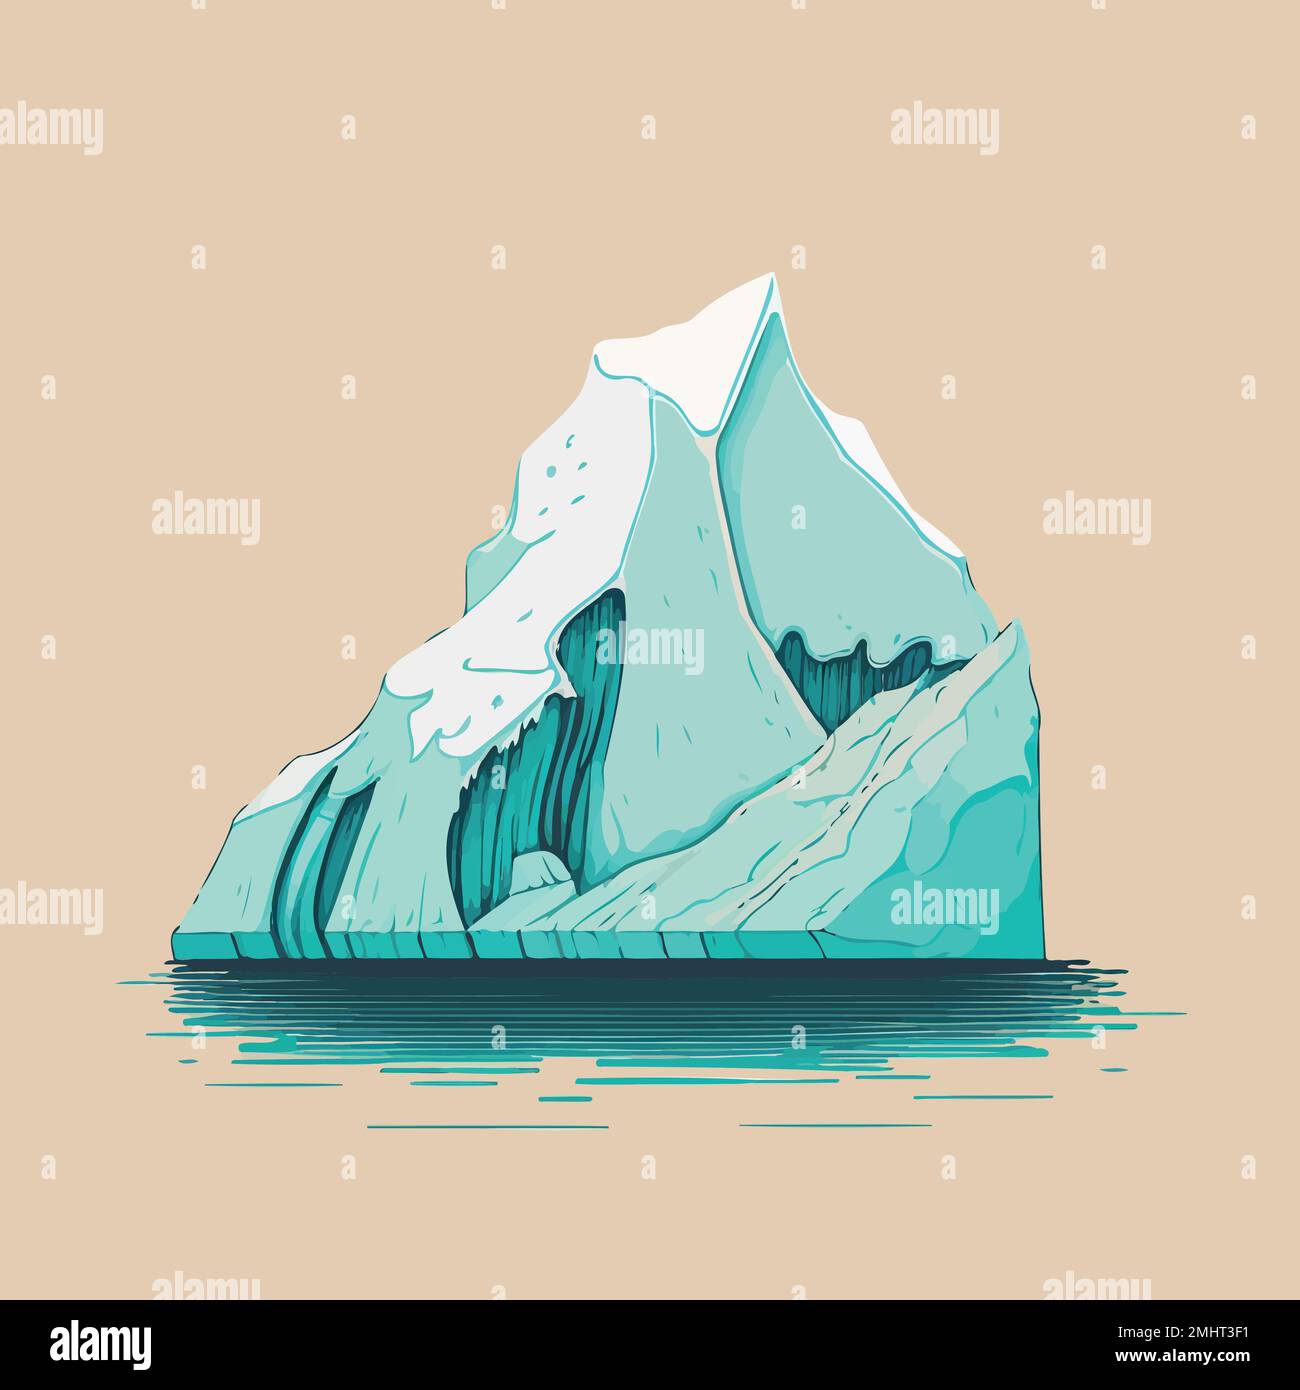 Illustrazione di un gigantesco iceberg di ghiaccio che galleggia sull'oceano Illustrazione Vettoriale